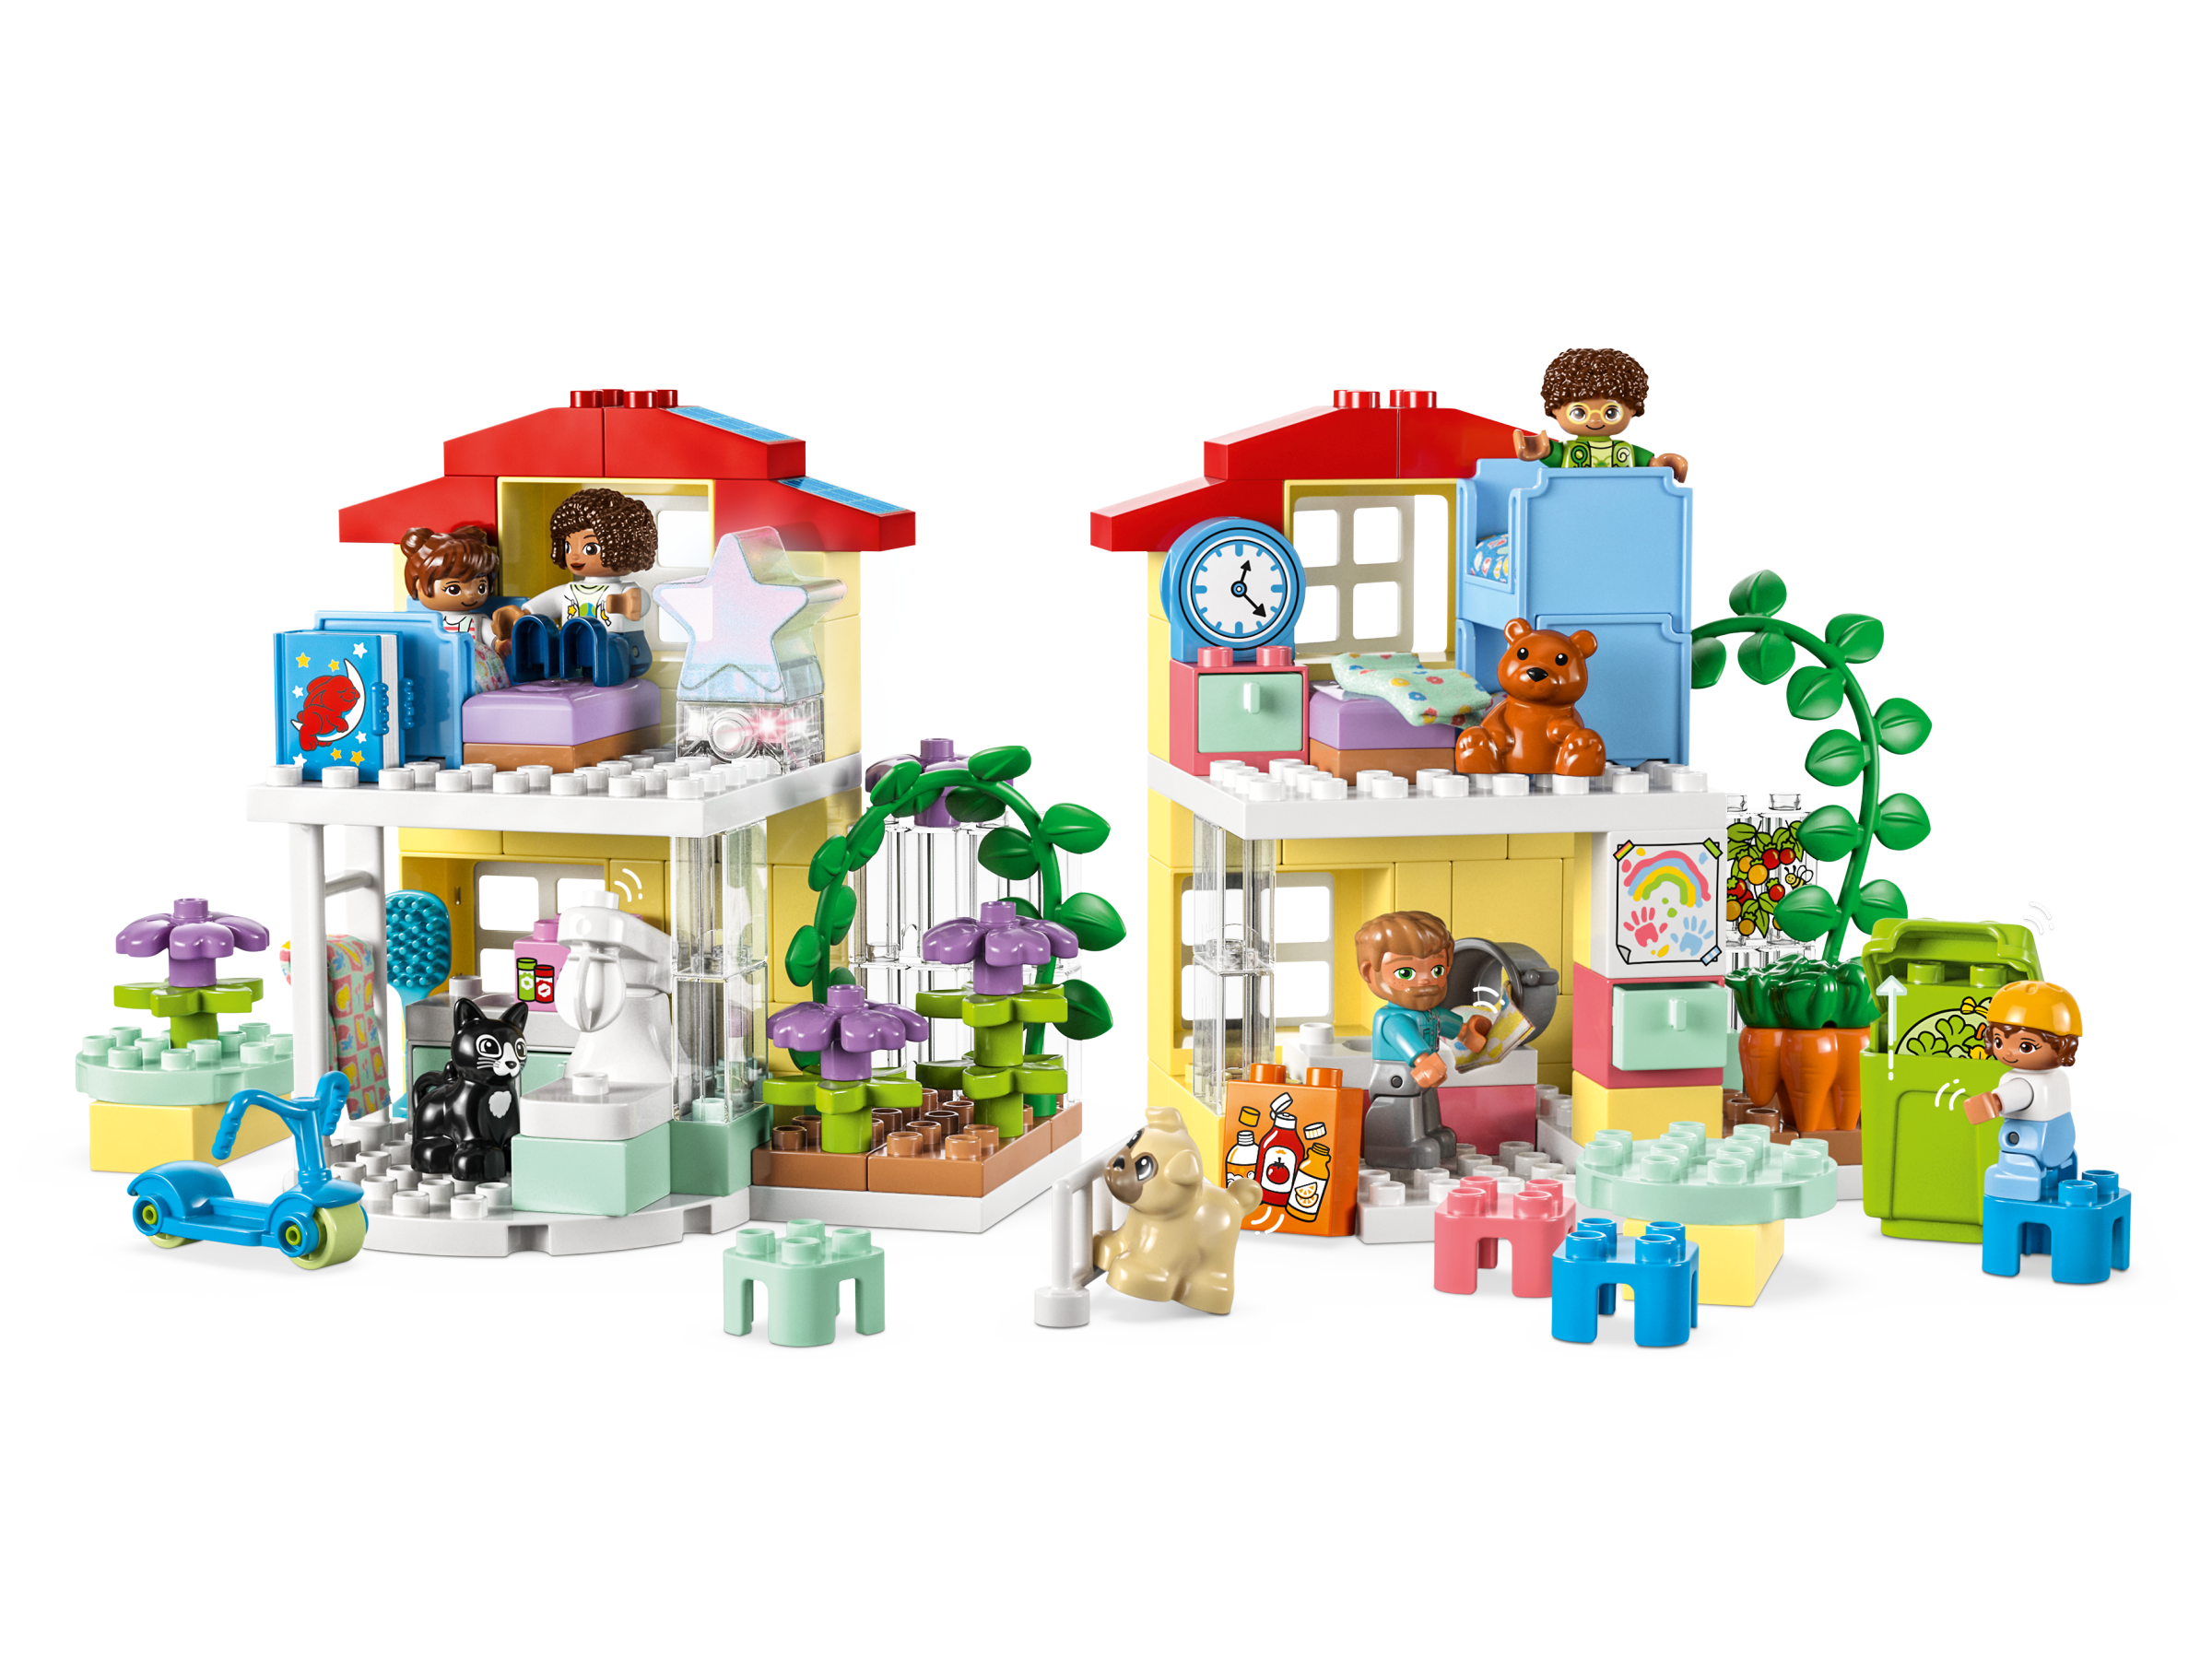  LEGO DUPLO Town 3 en 1 Family House 10994 - Juego de juguetes  educativos de construcción STEM, regalo para Navidad para niños de 3 años  en adelante, juguete de automóvil y